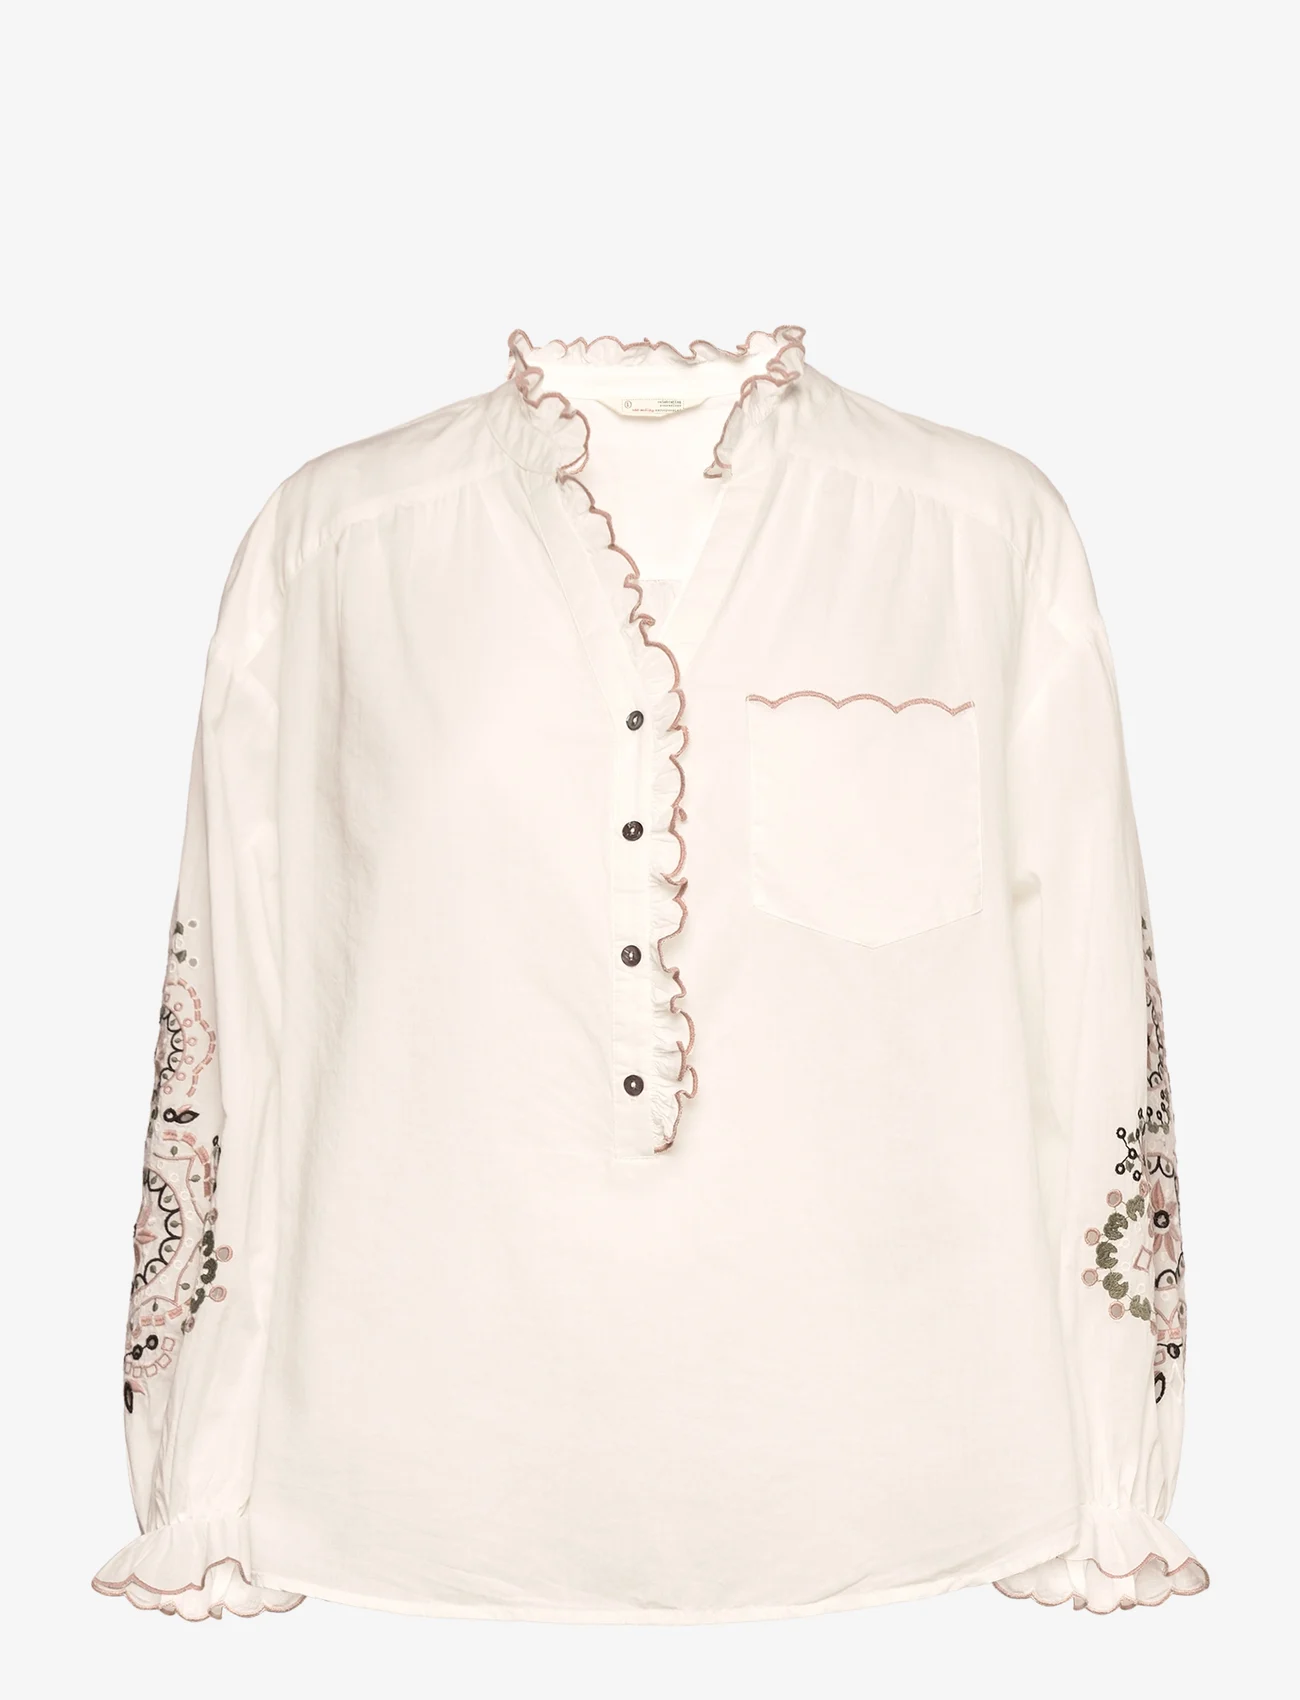 ODD MOLLY - Edie Blouse - long-sleeved blouses - light chalk - 0